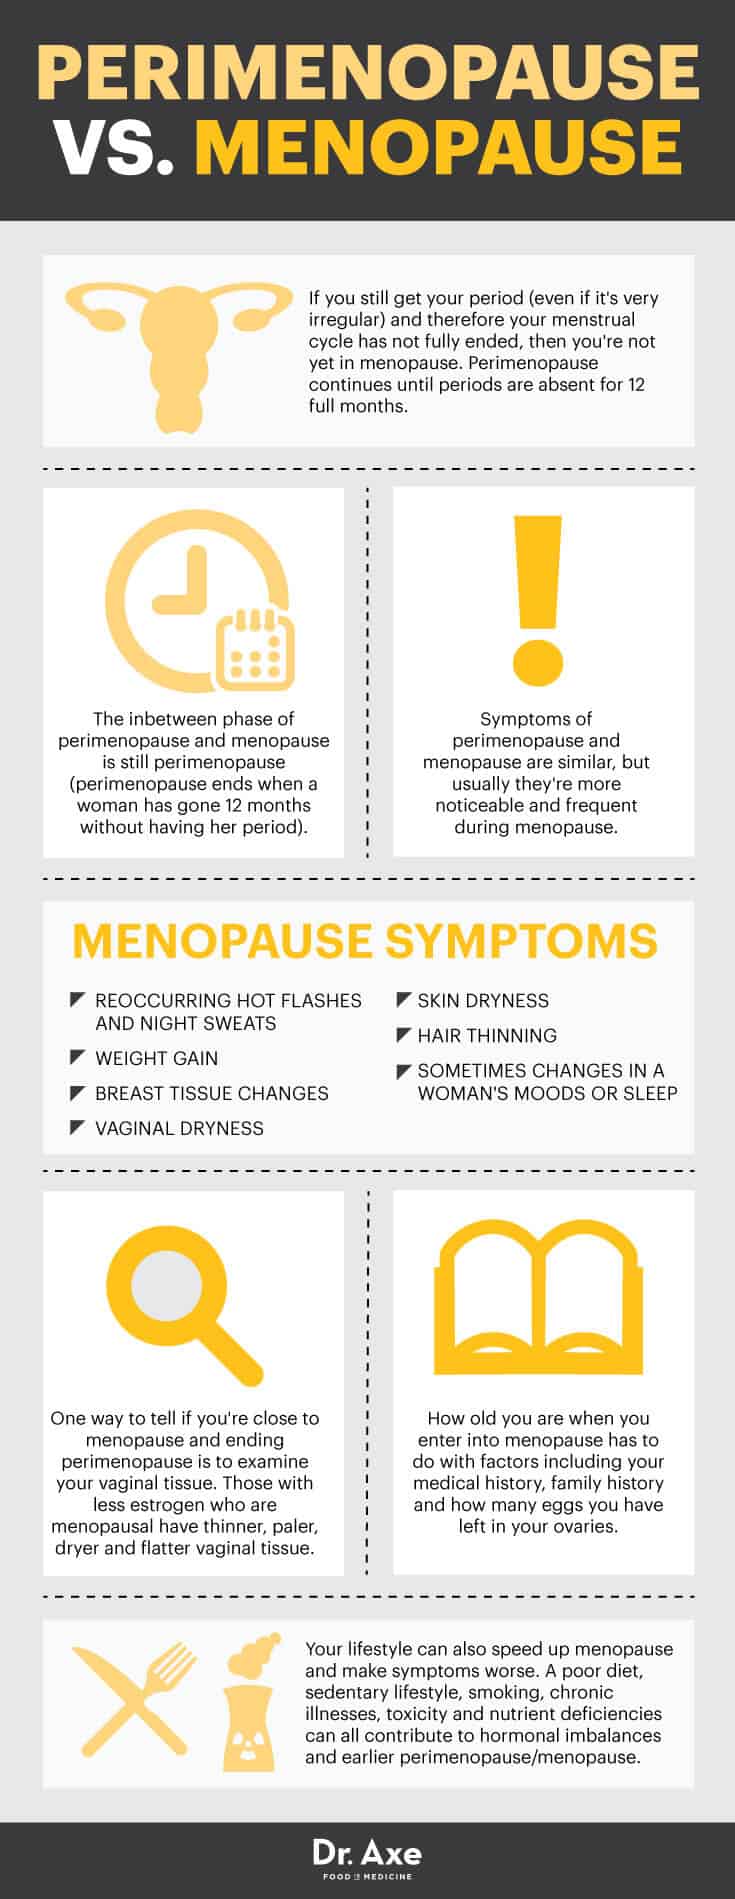 Perimenopause vs. menopause - Dr. Axe